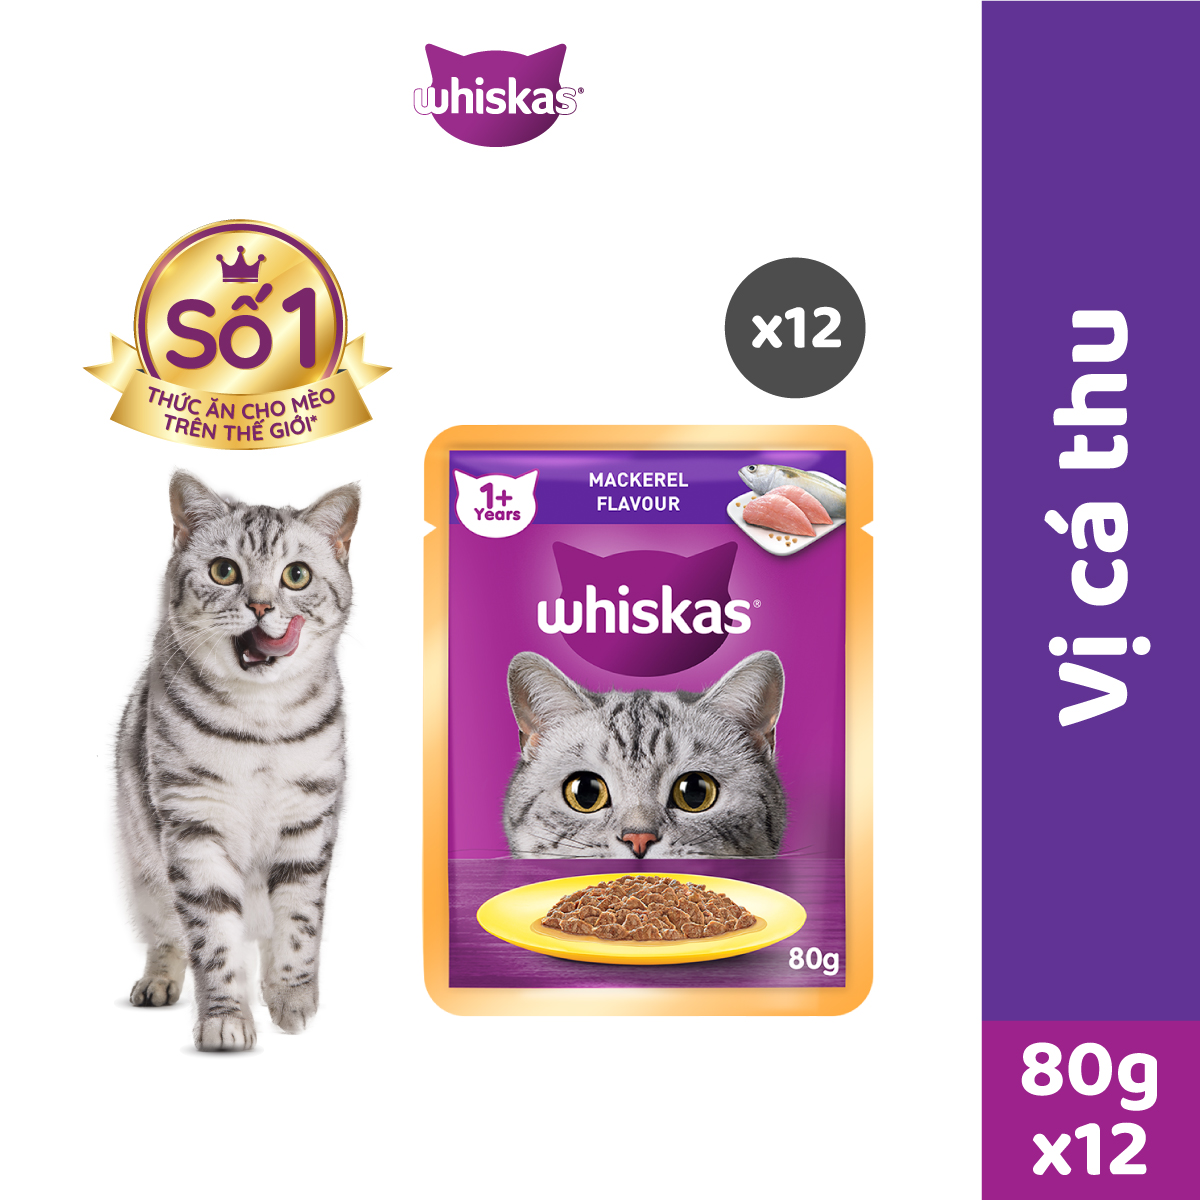 Bộ 12 túi thức ăn cho mèo Whiskas vị cá thu 80g